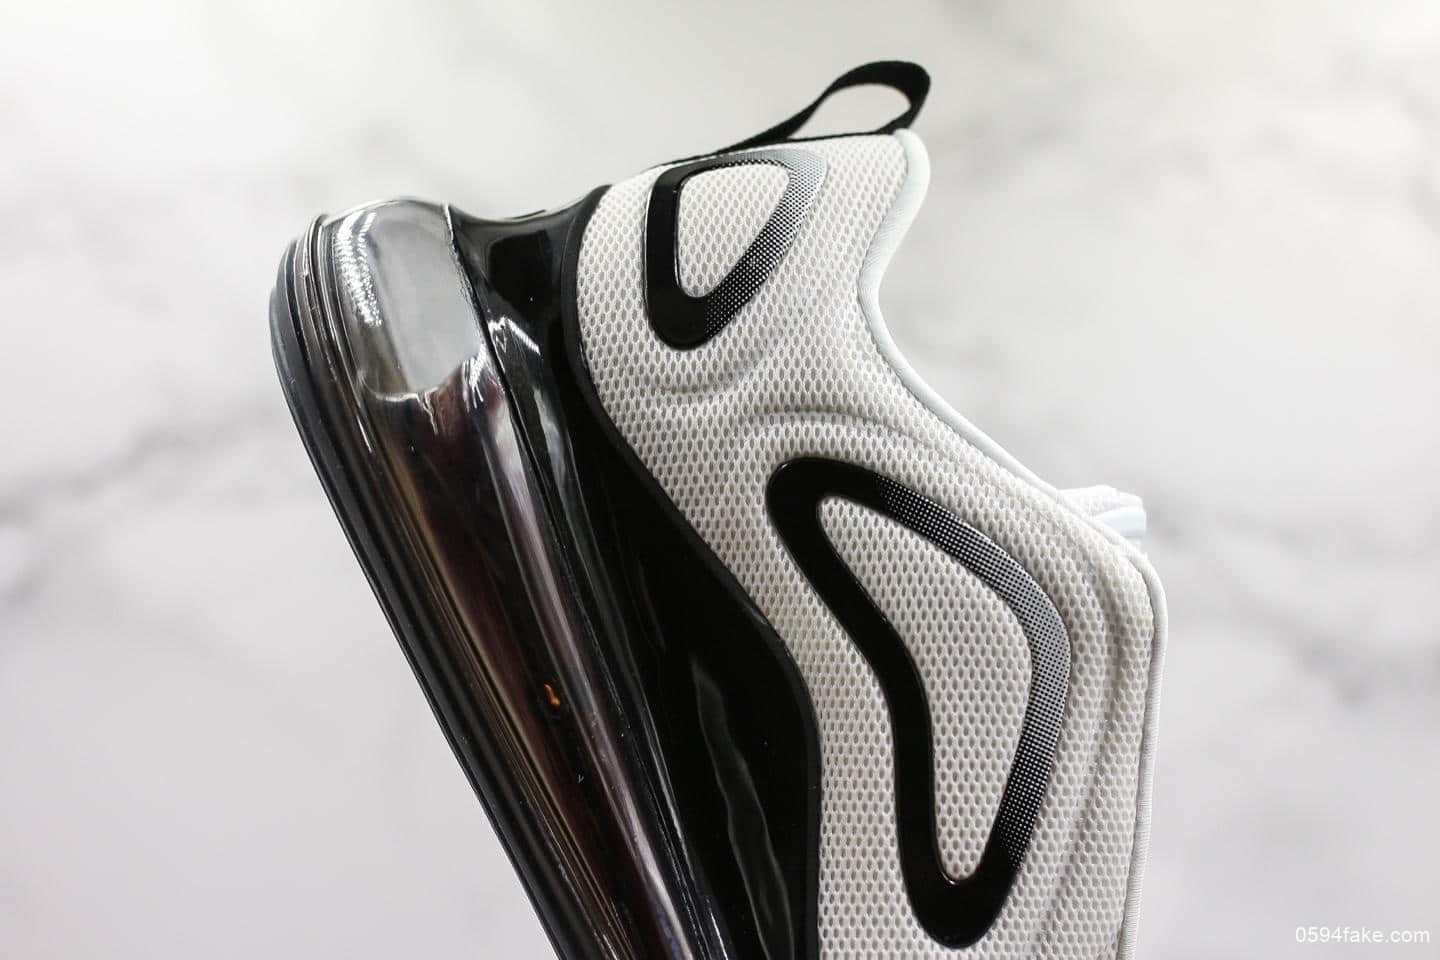 耐克Nike Air Max 720&#8243;White/Black/Volt&#8221;太空大气垫 CJ4584-100 - 耐克720气垫, 全新配色耐克720气垫, Volt, Nike Air Max, Nike, CJ4584-100, Black